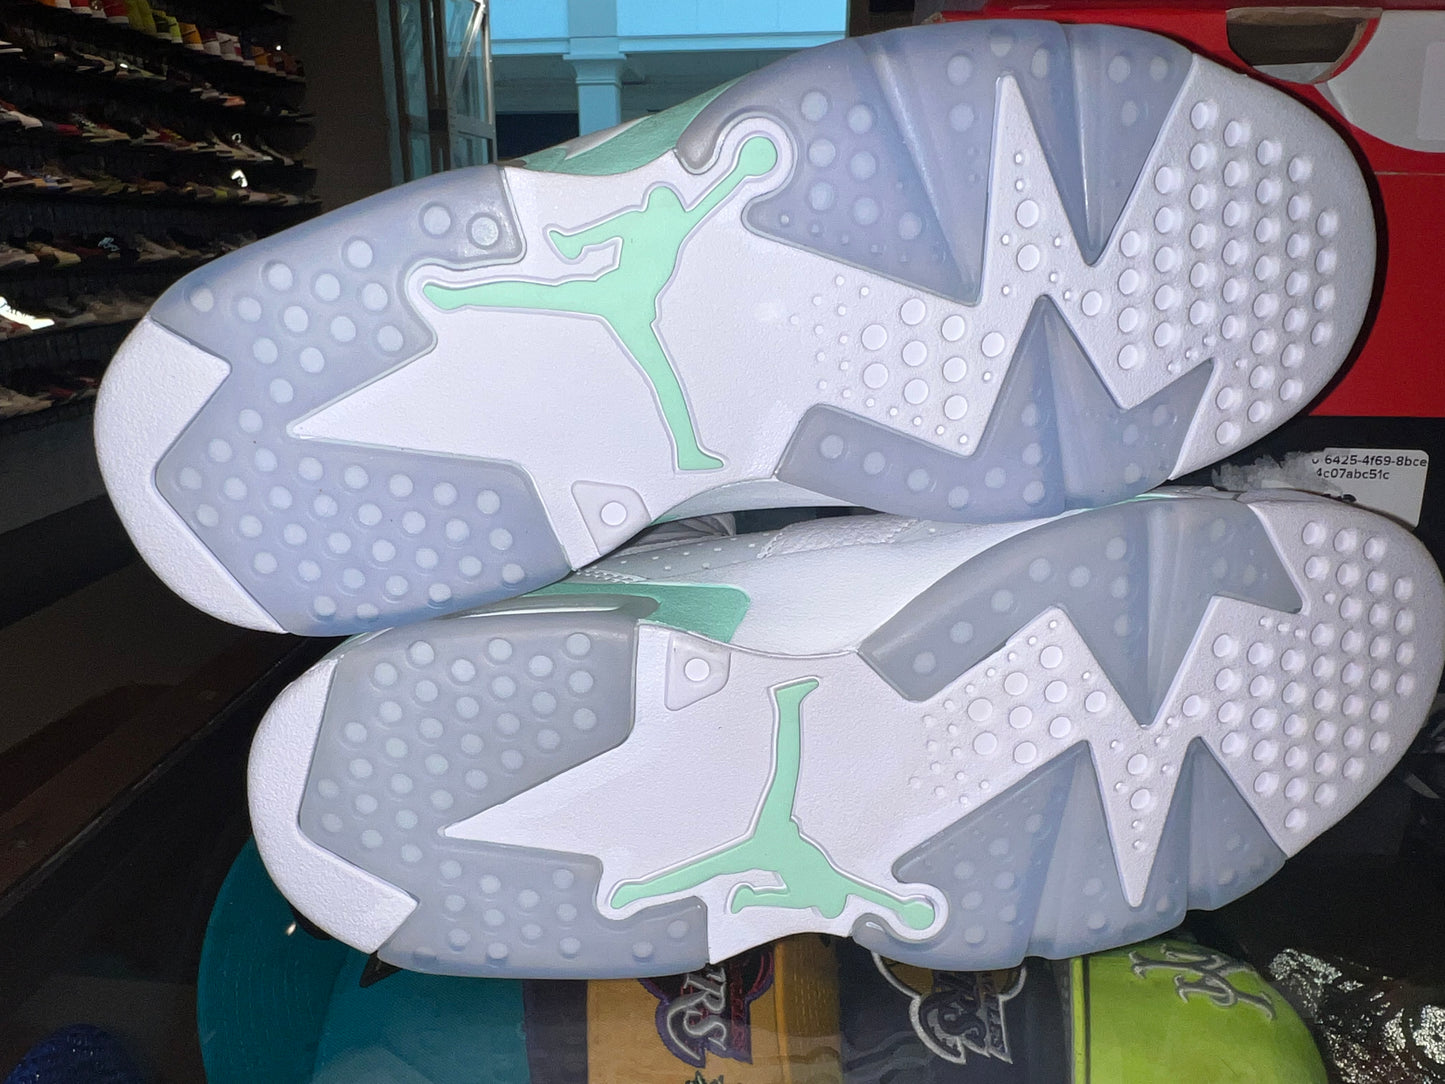 Size 9 (10.5W) Air Jordan 6 “Mint Foam” Brand New (Mall)